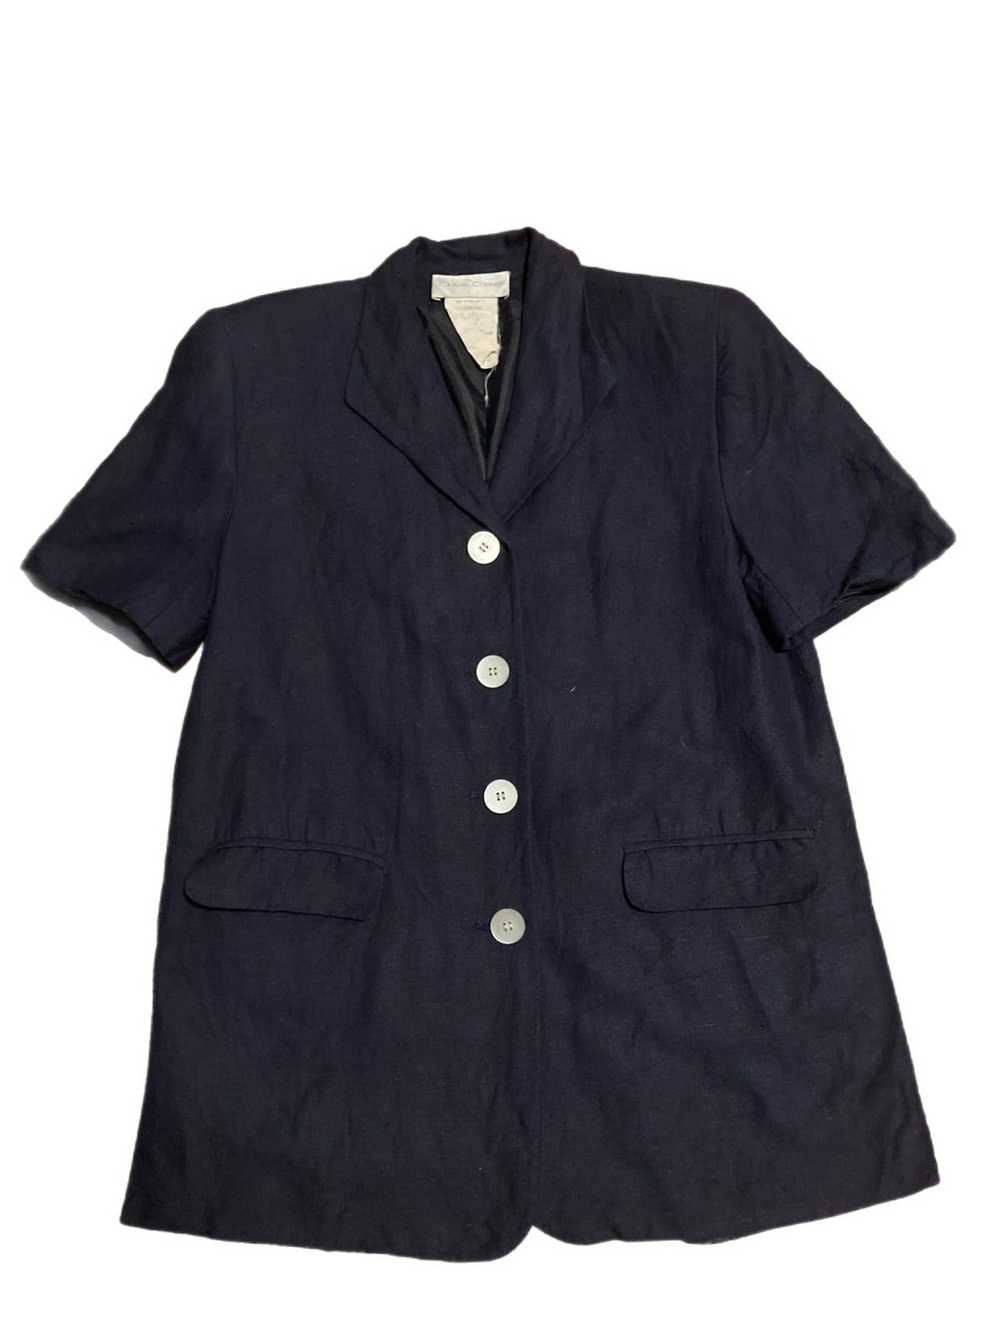 Vintage Vintage linen blend blazer - image 1